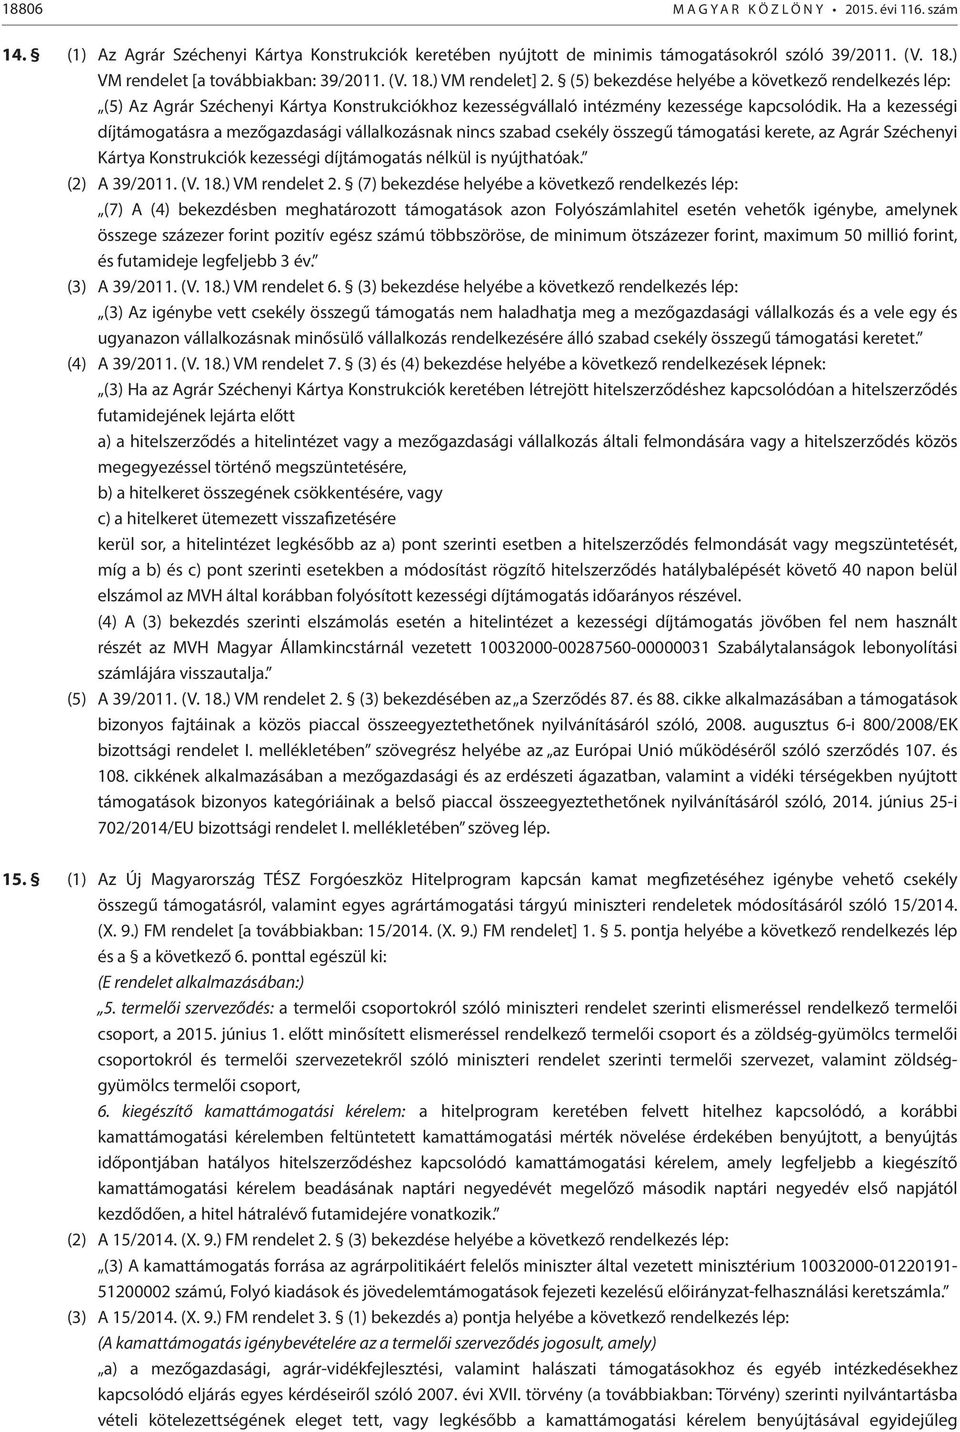 (5) bekezdése helyébe a következő rendelkezés lép: (5) Az Agrár Széchenyi Kártya Konstrukciókhoz kezességvállaló intézmény kezessége kapcsolódik.